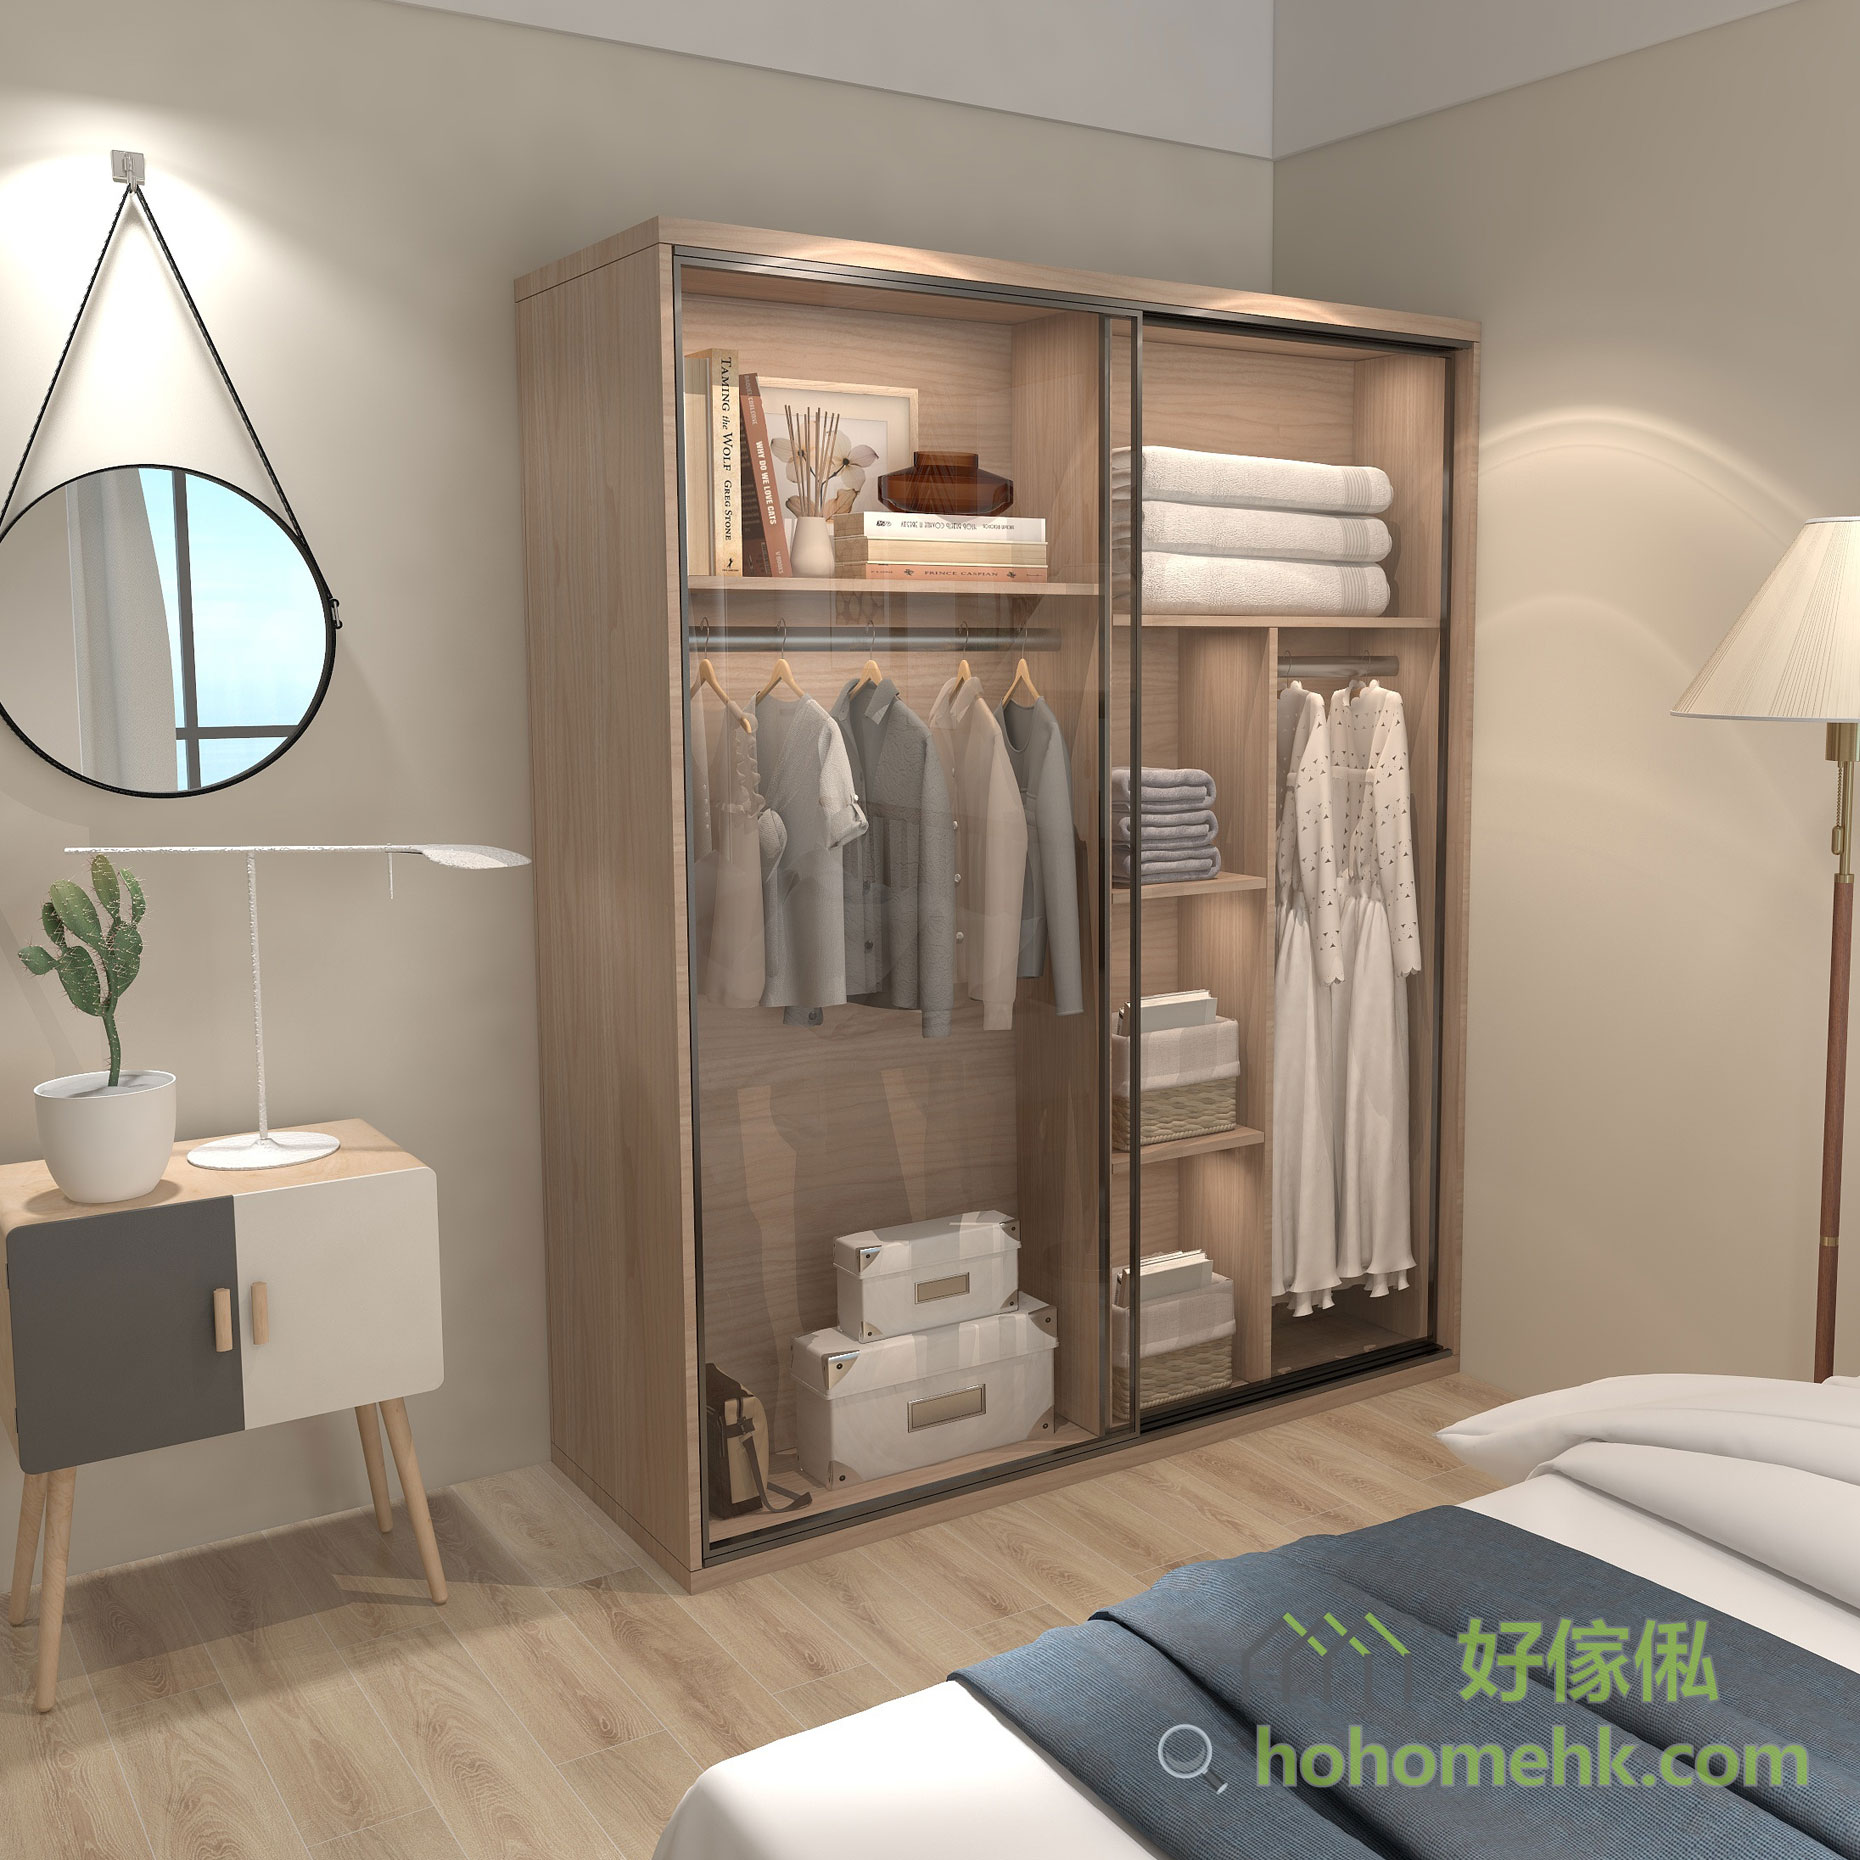 有沒有想過衣櫃都可以成為睡房裡的裝飾品？只要一個玻璃趟門衣櫃就可以為睡房增加現代感了。